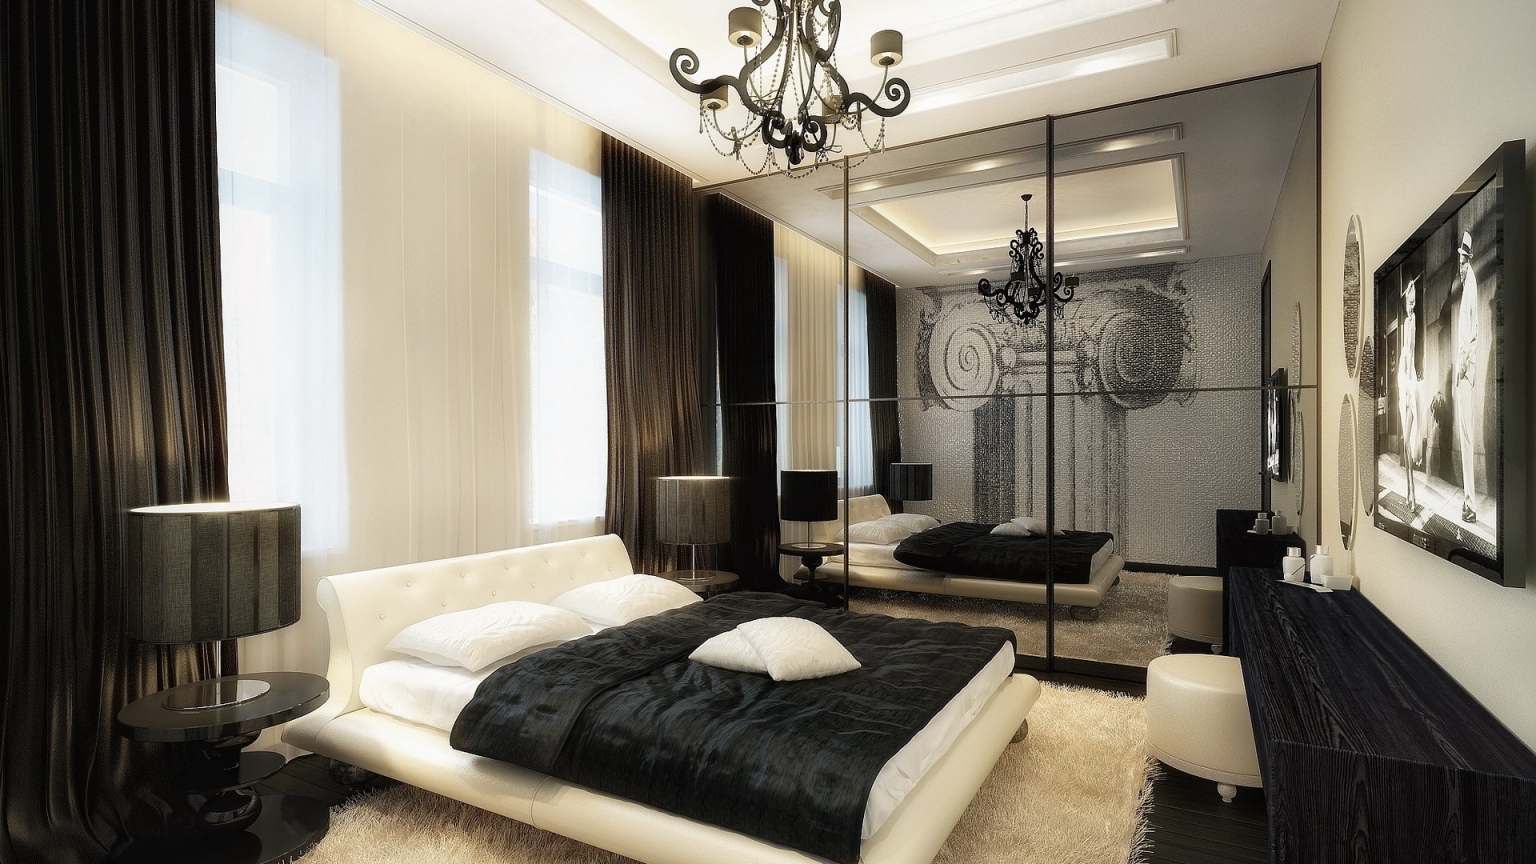 Splendid Bedroom Design for 1536 x 864 HDTV resolution